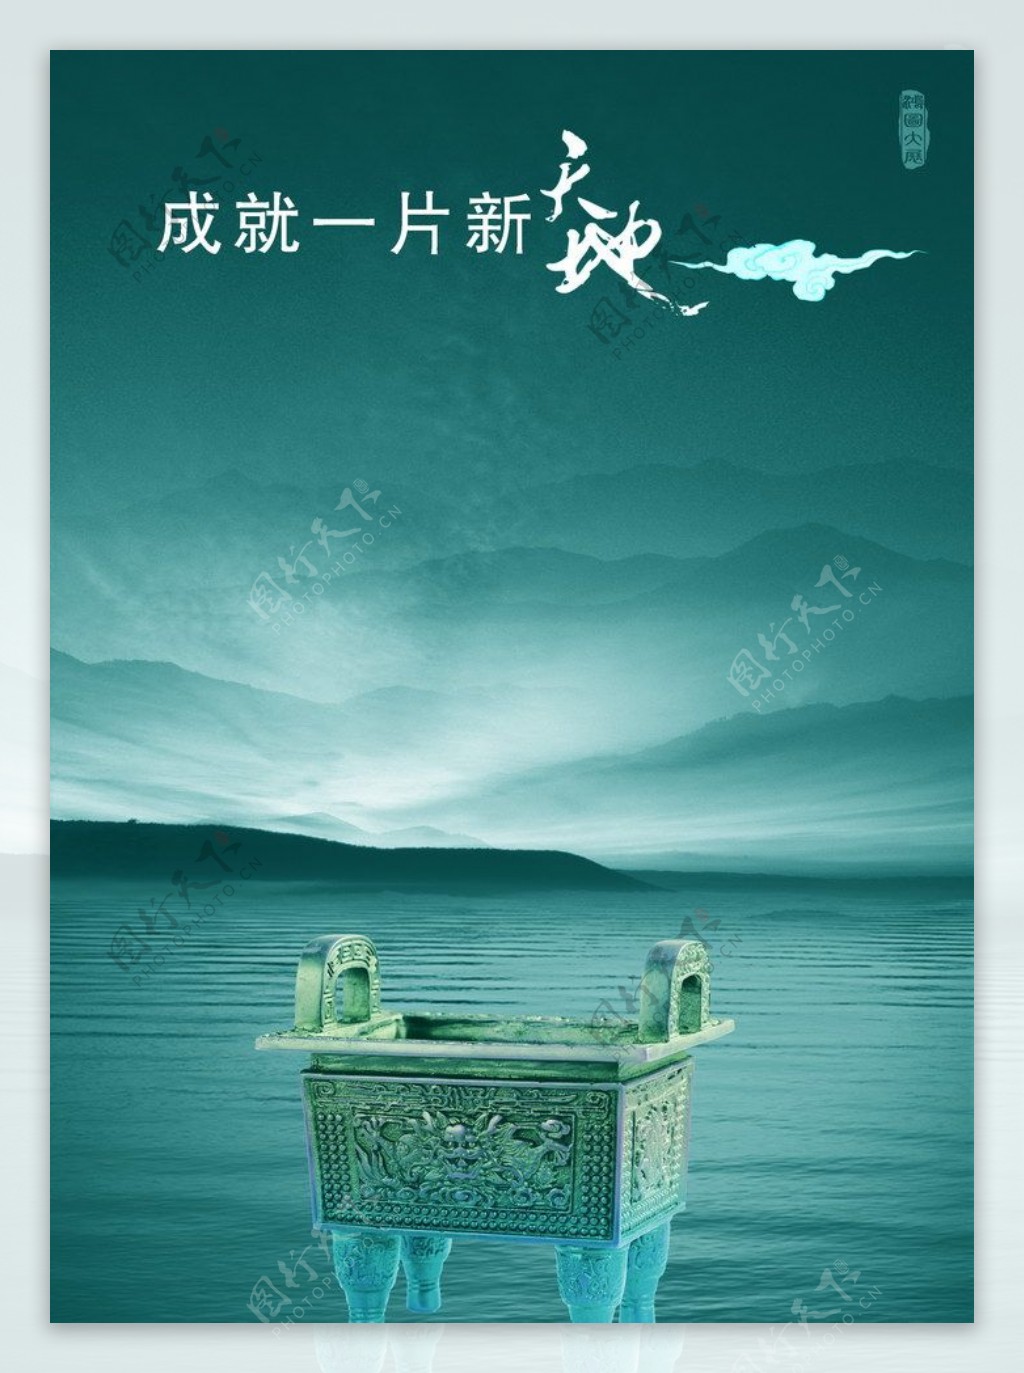 宏图大展中国风广告设计PSD